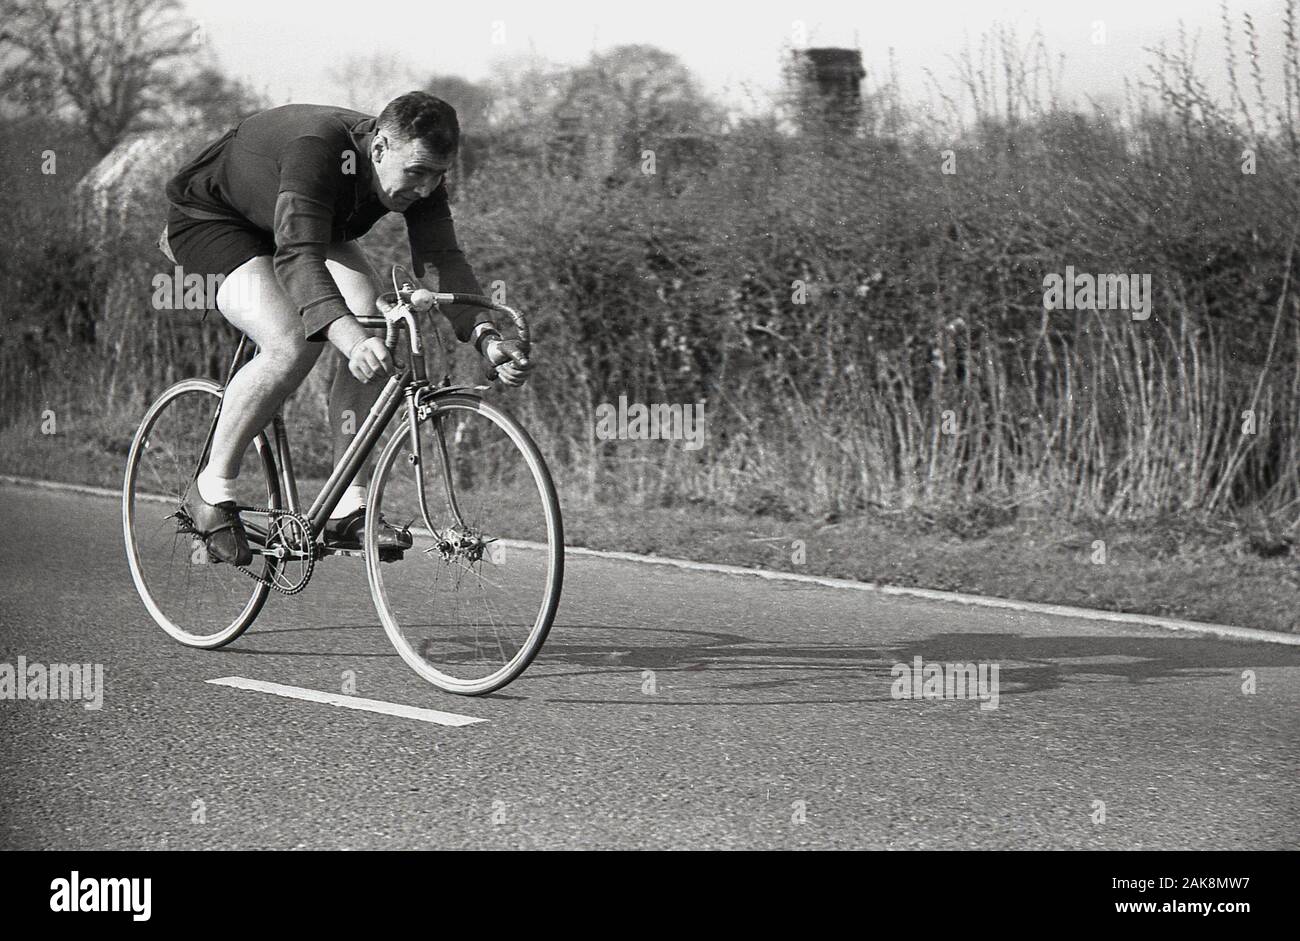 1950, histórica, un macho de contrarreloj El ciclista circulaba en una carretera pública vistiendo la ropa del ciclo de la época, Inglaterra, Reino Unido. Foto de stock